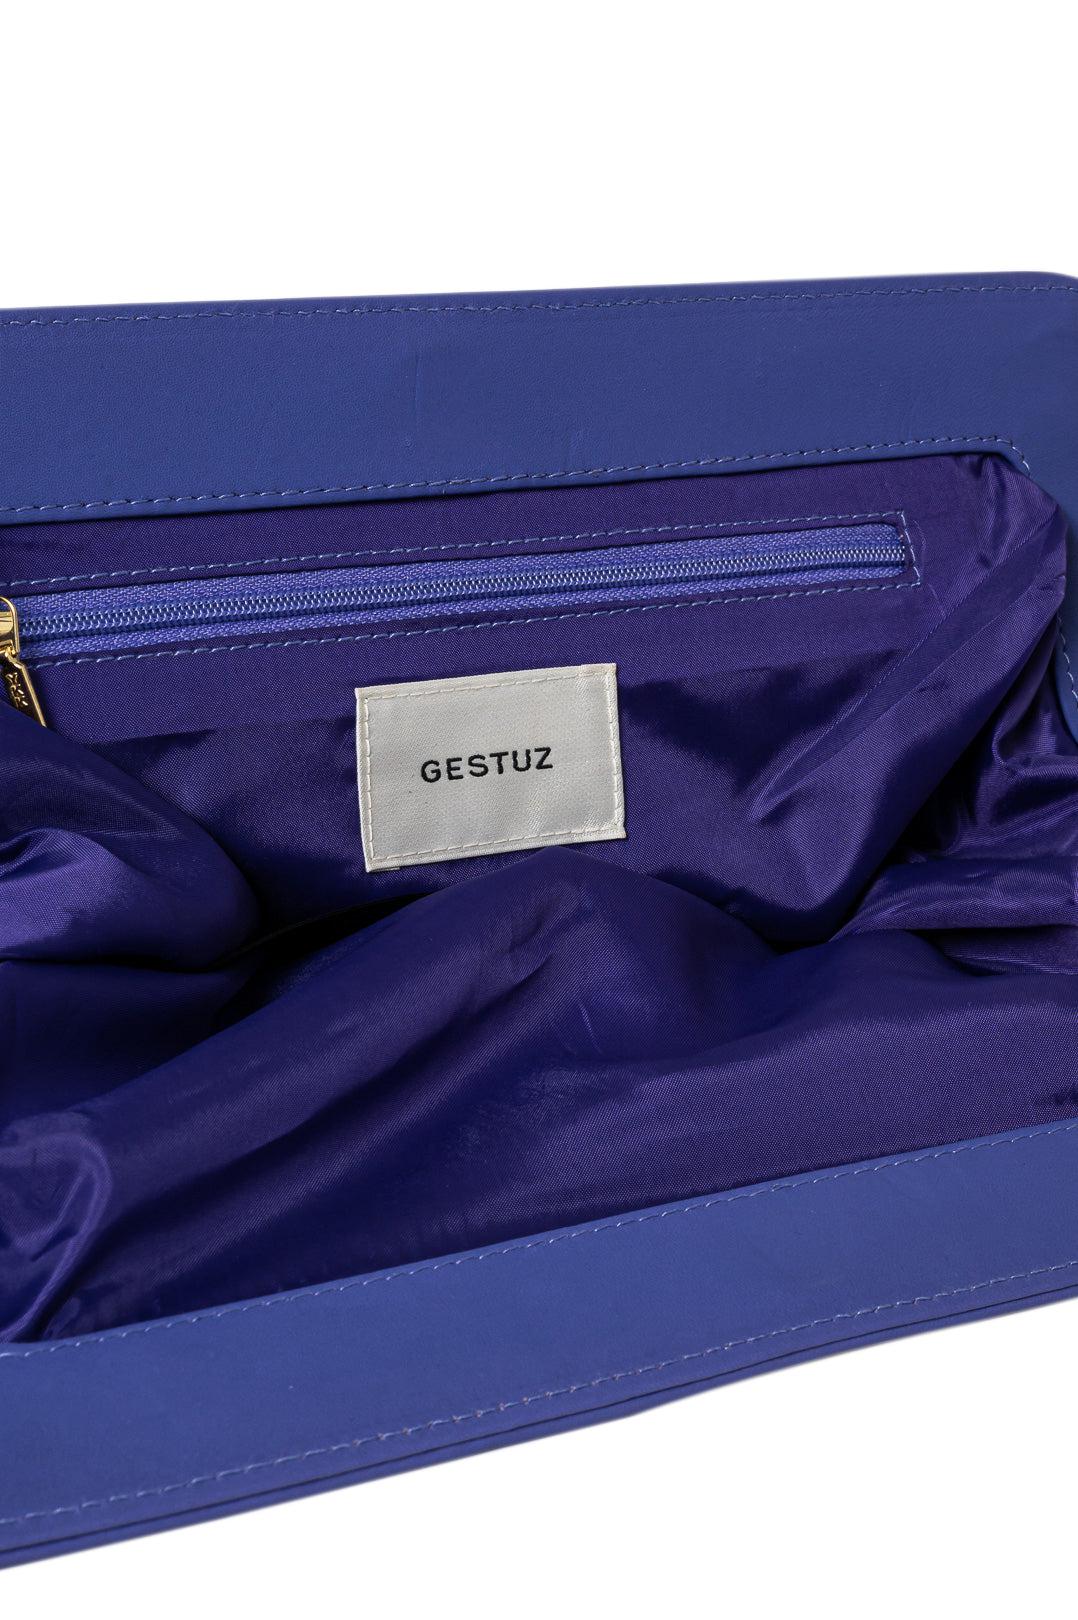 Gestuz-Veldagz clutch bag-10906841-dgallerystore